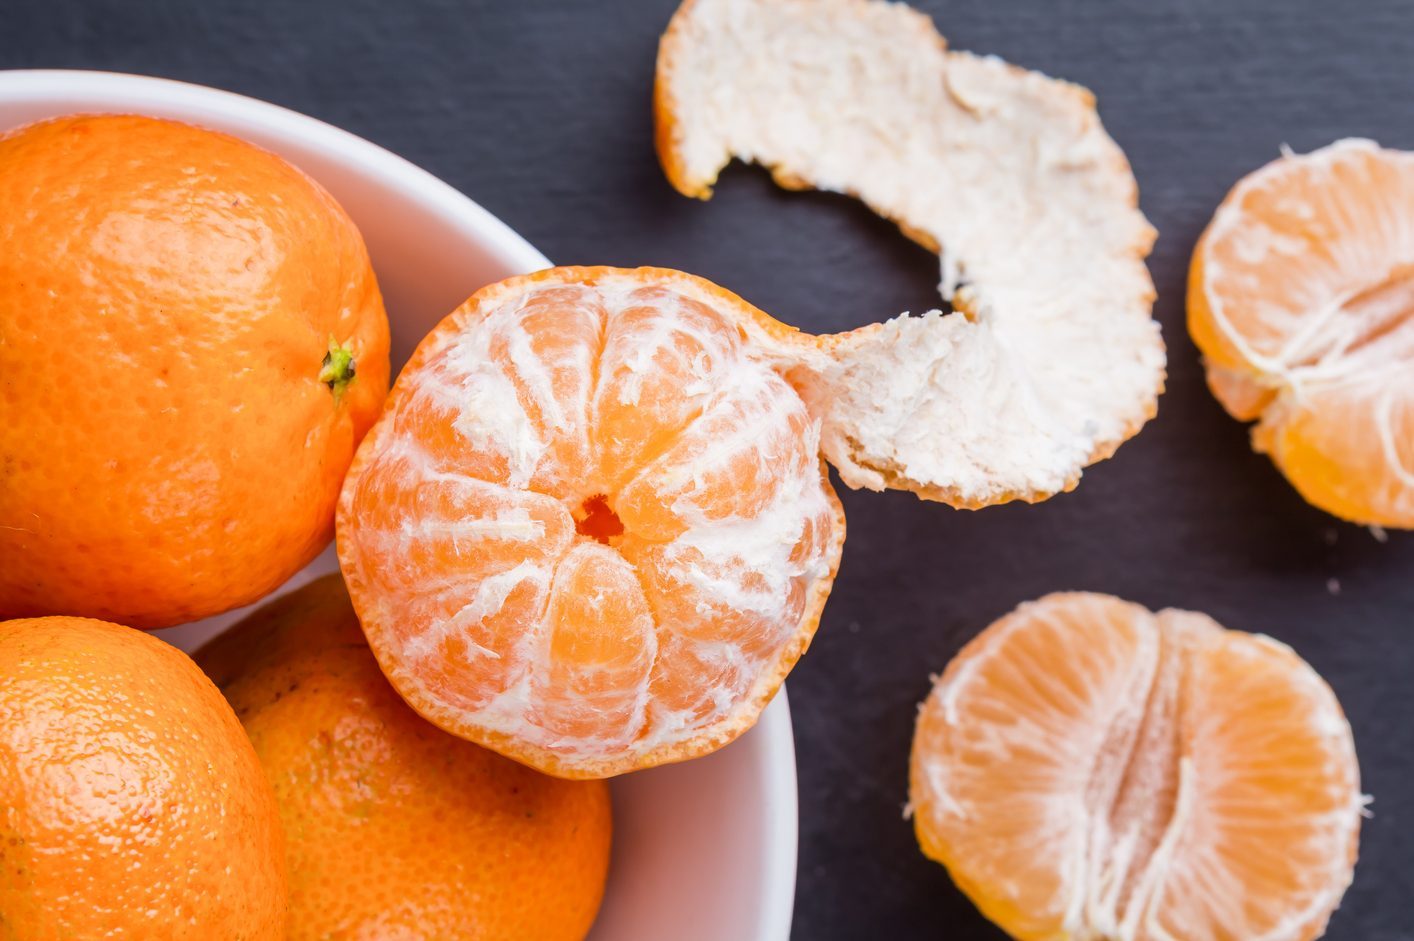 Benefits of Eating An Orange